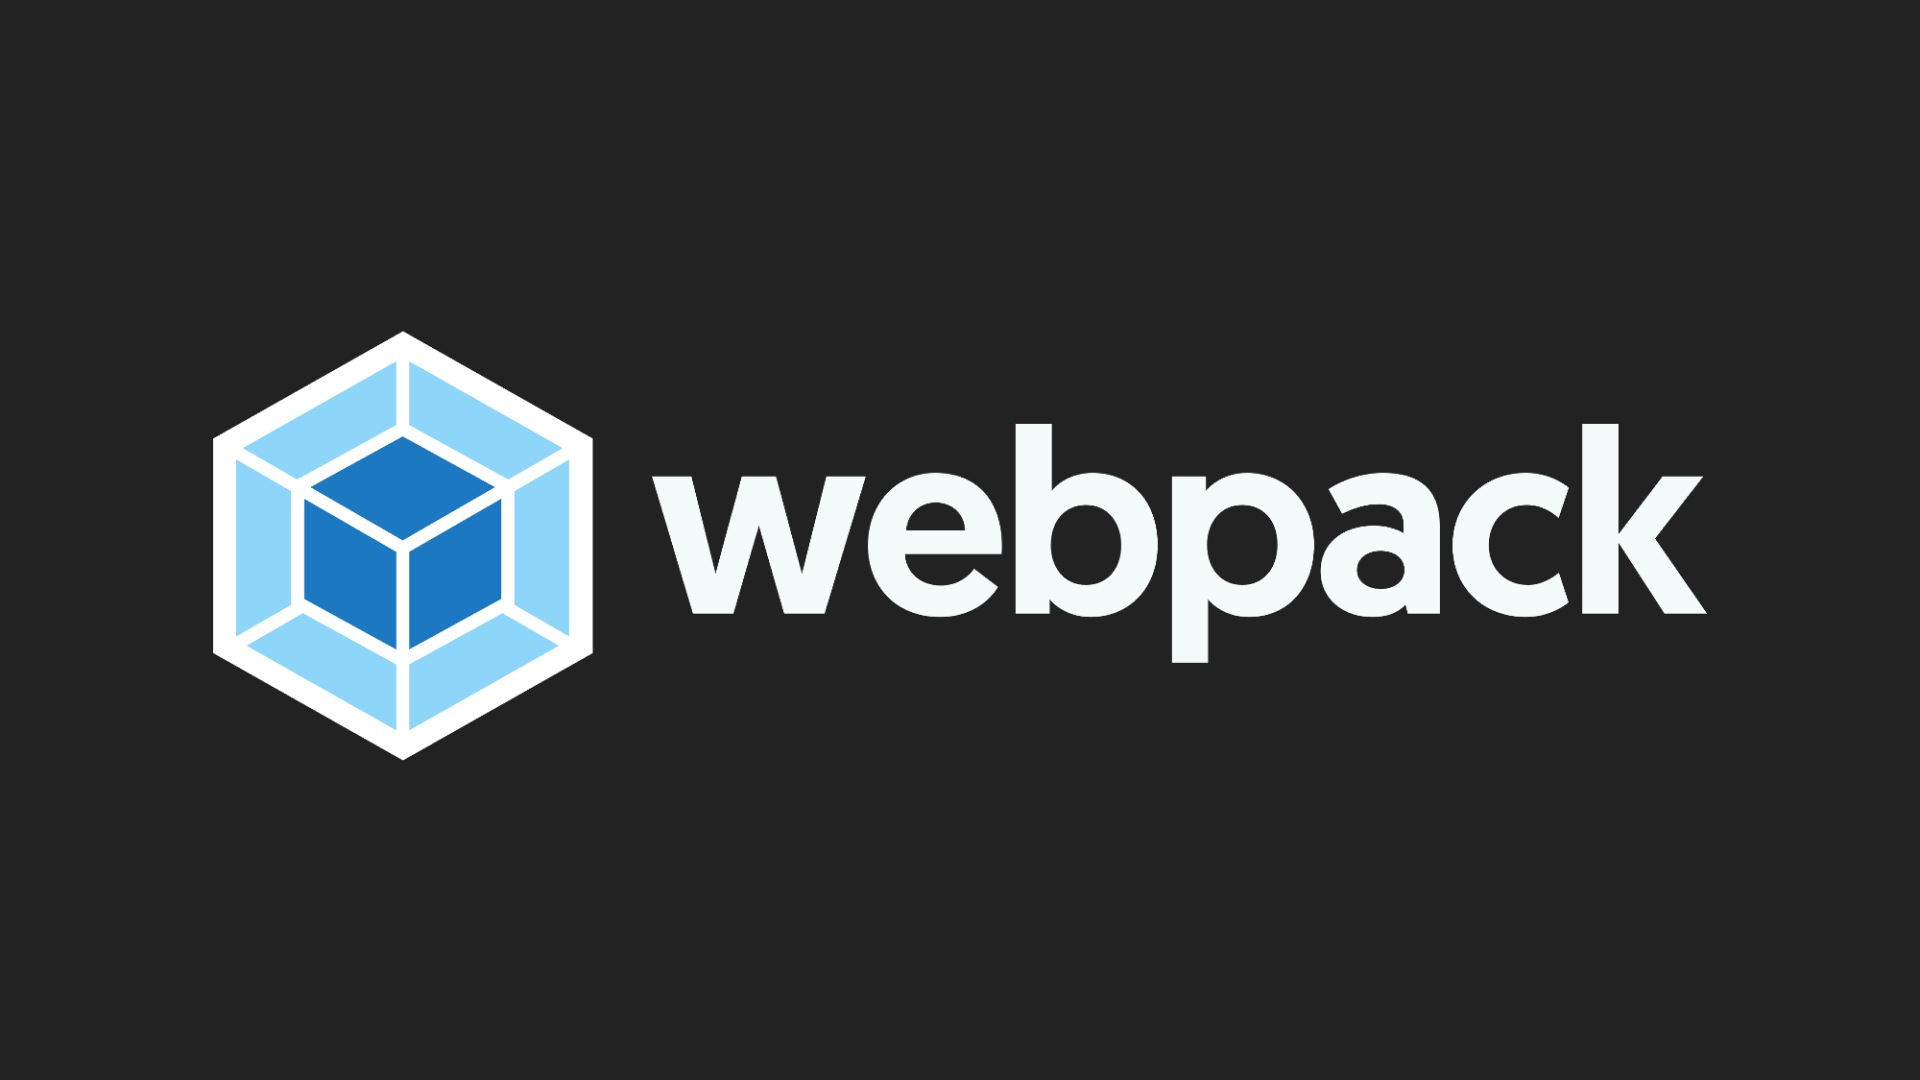 Webpack. Webpack logo. Webpack Tutorial. Mayr webpack. Script webpack